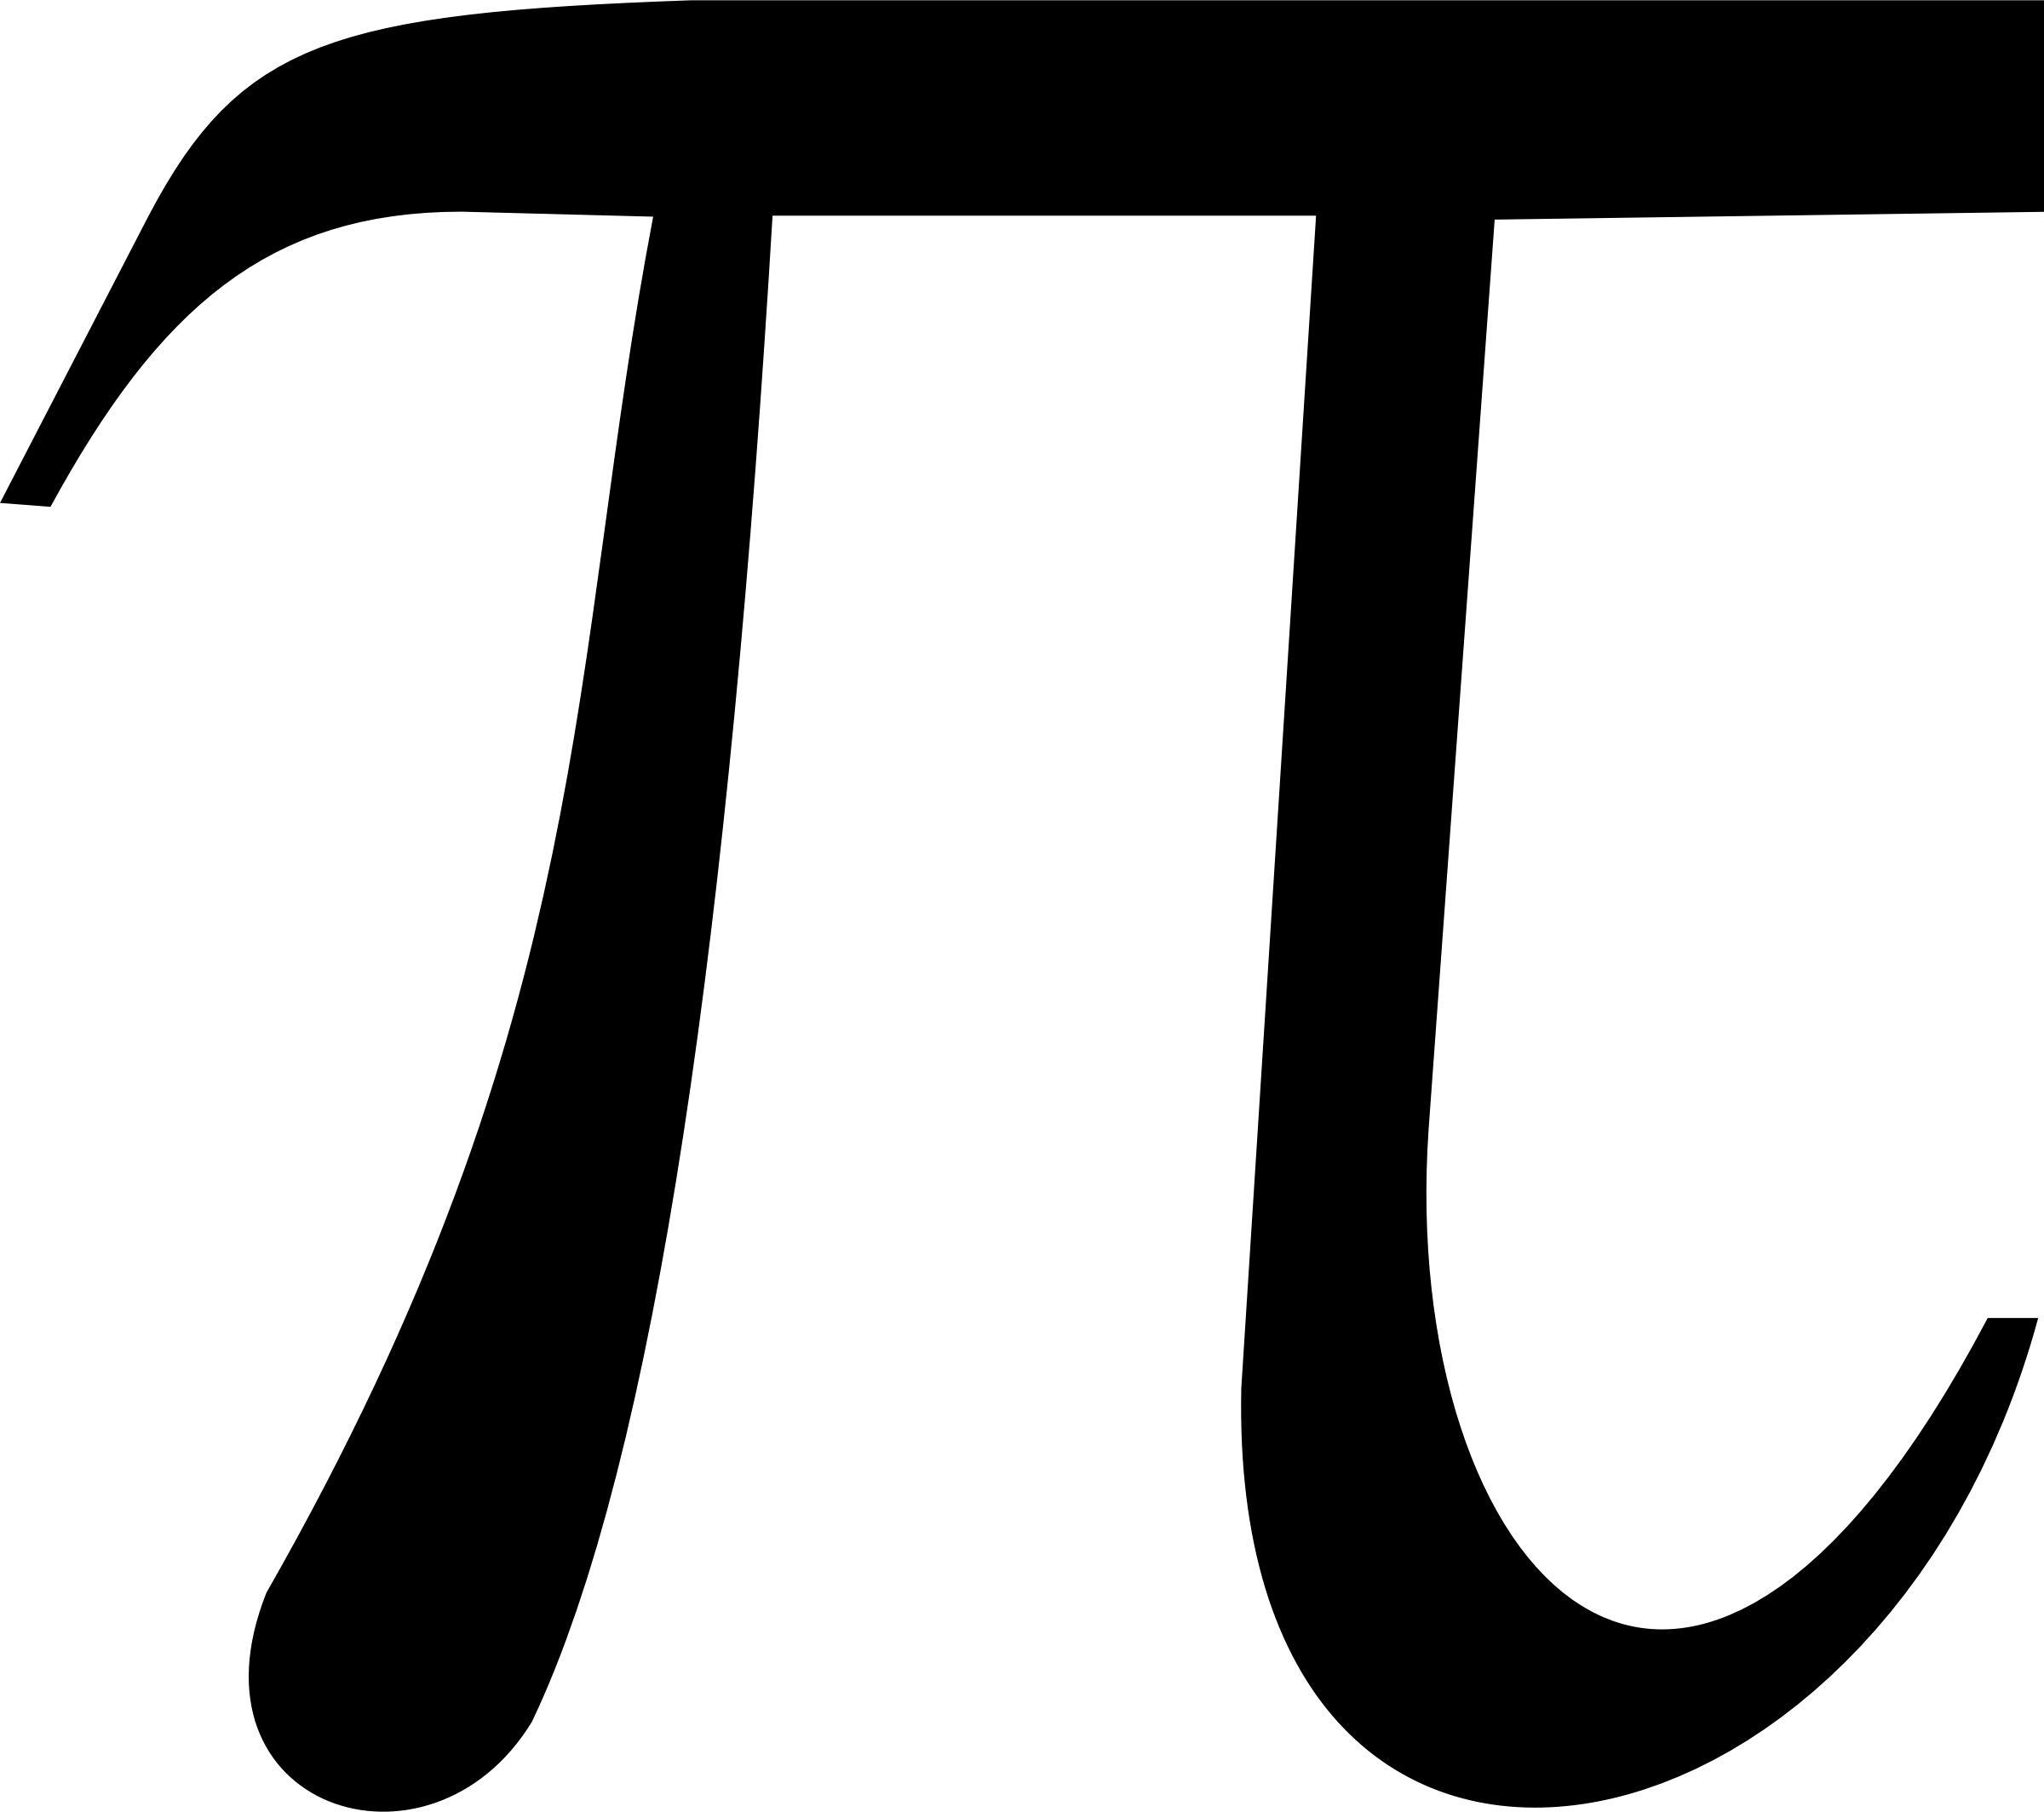 Clipart - math pi symbol